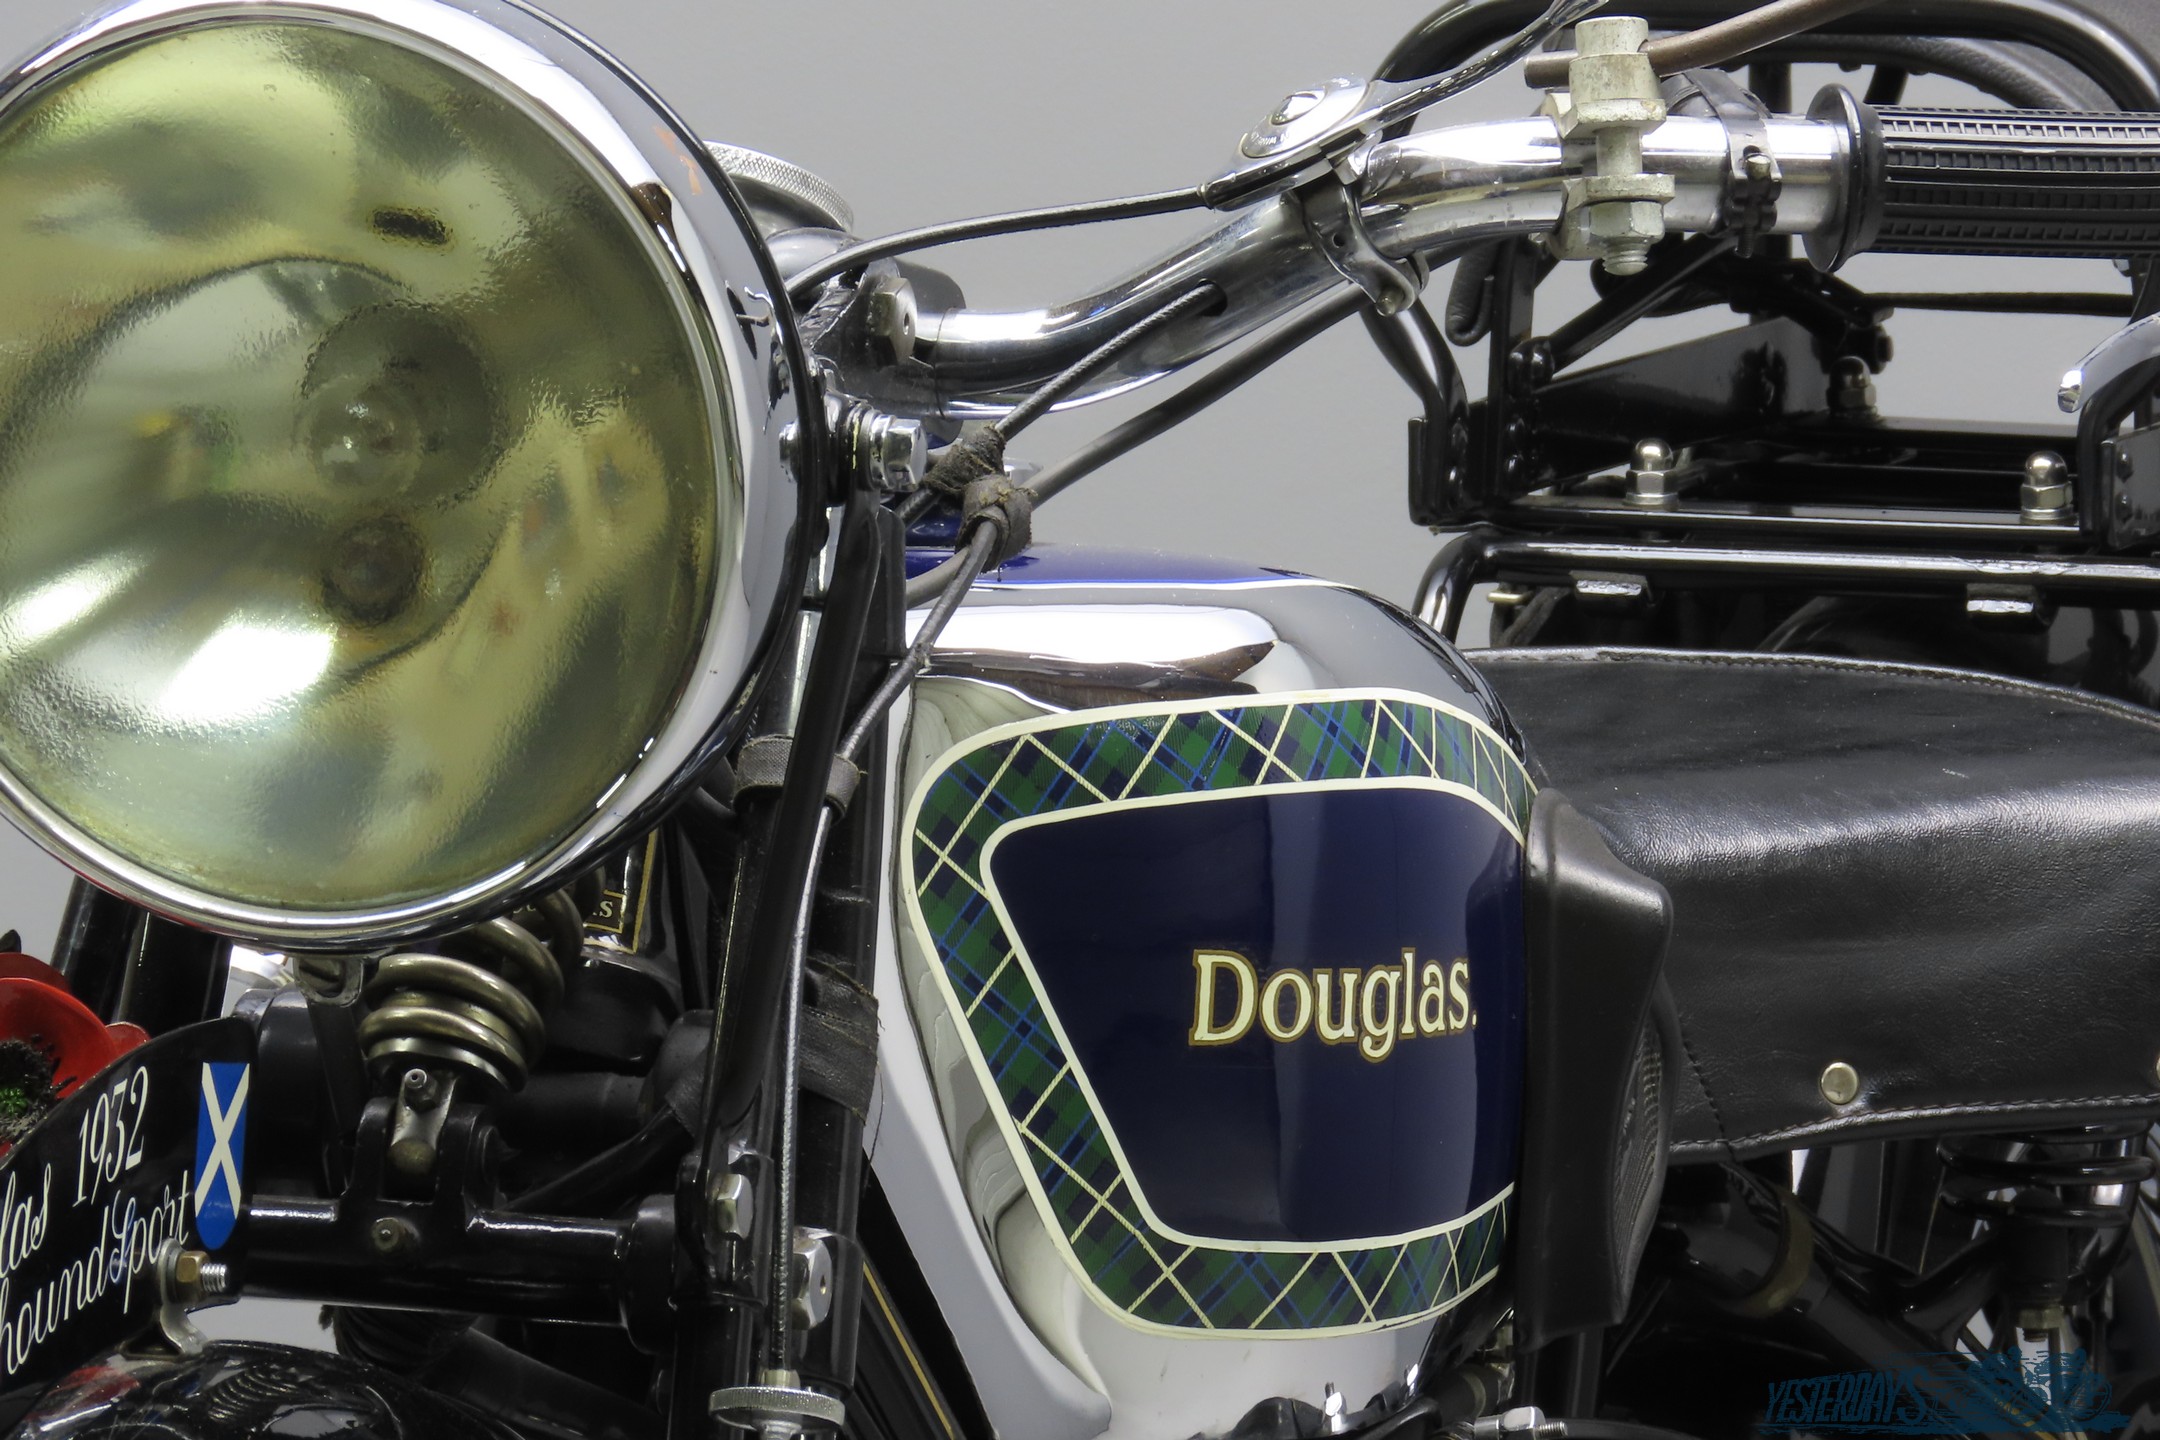 Douglas-1932 3020-11